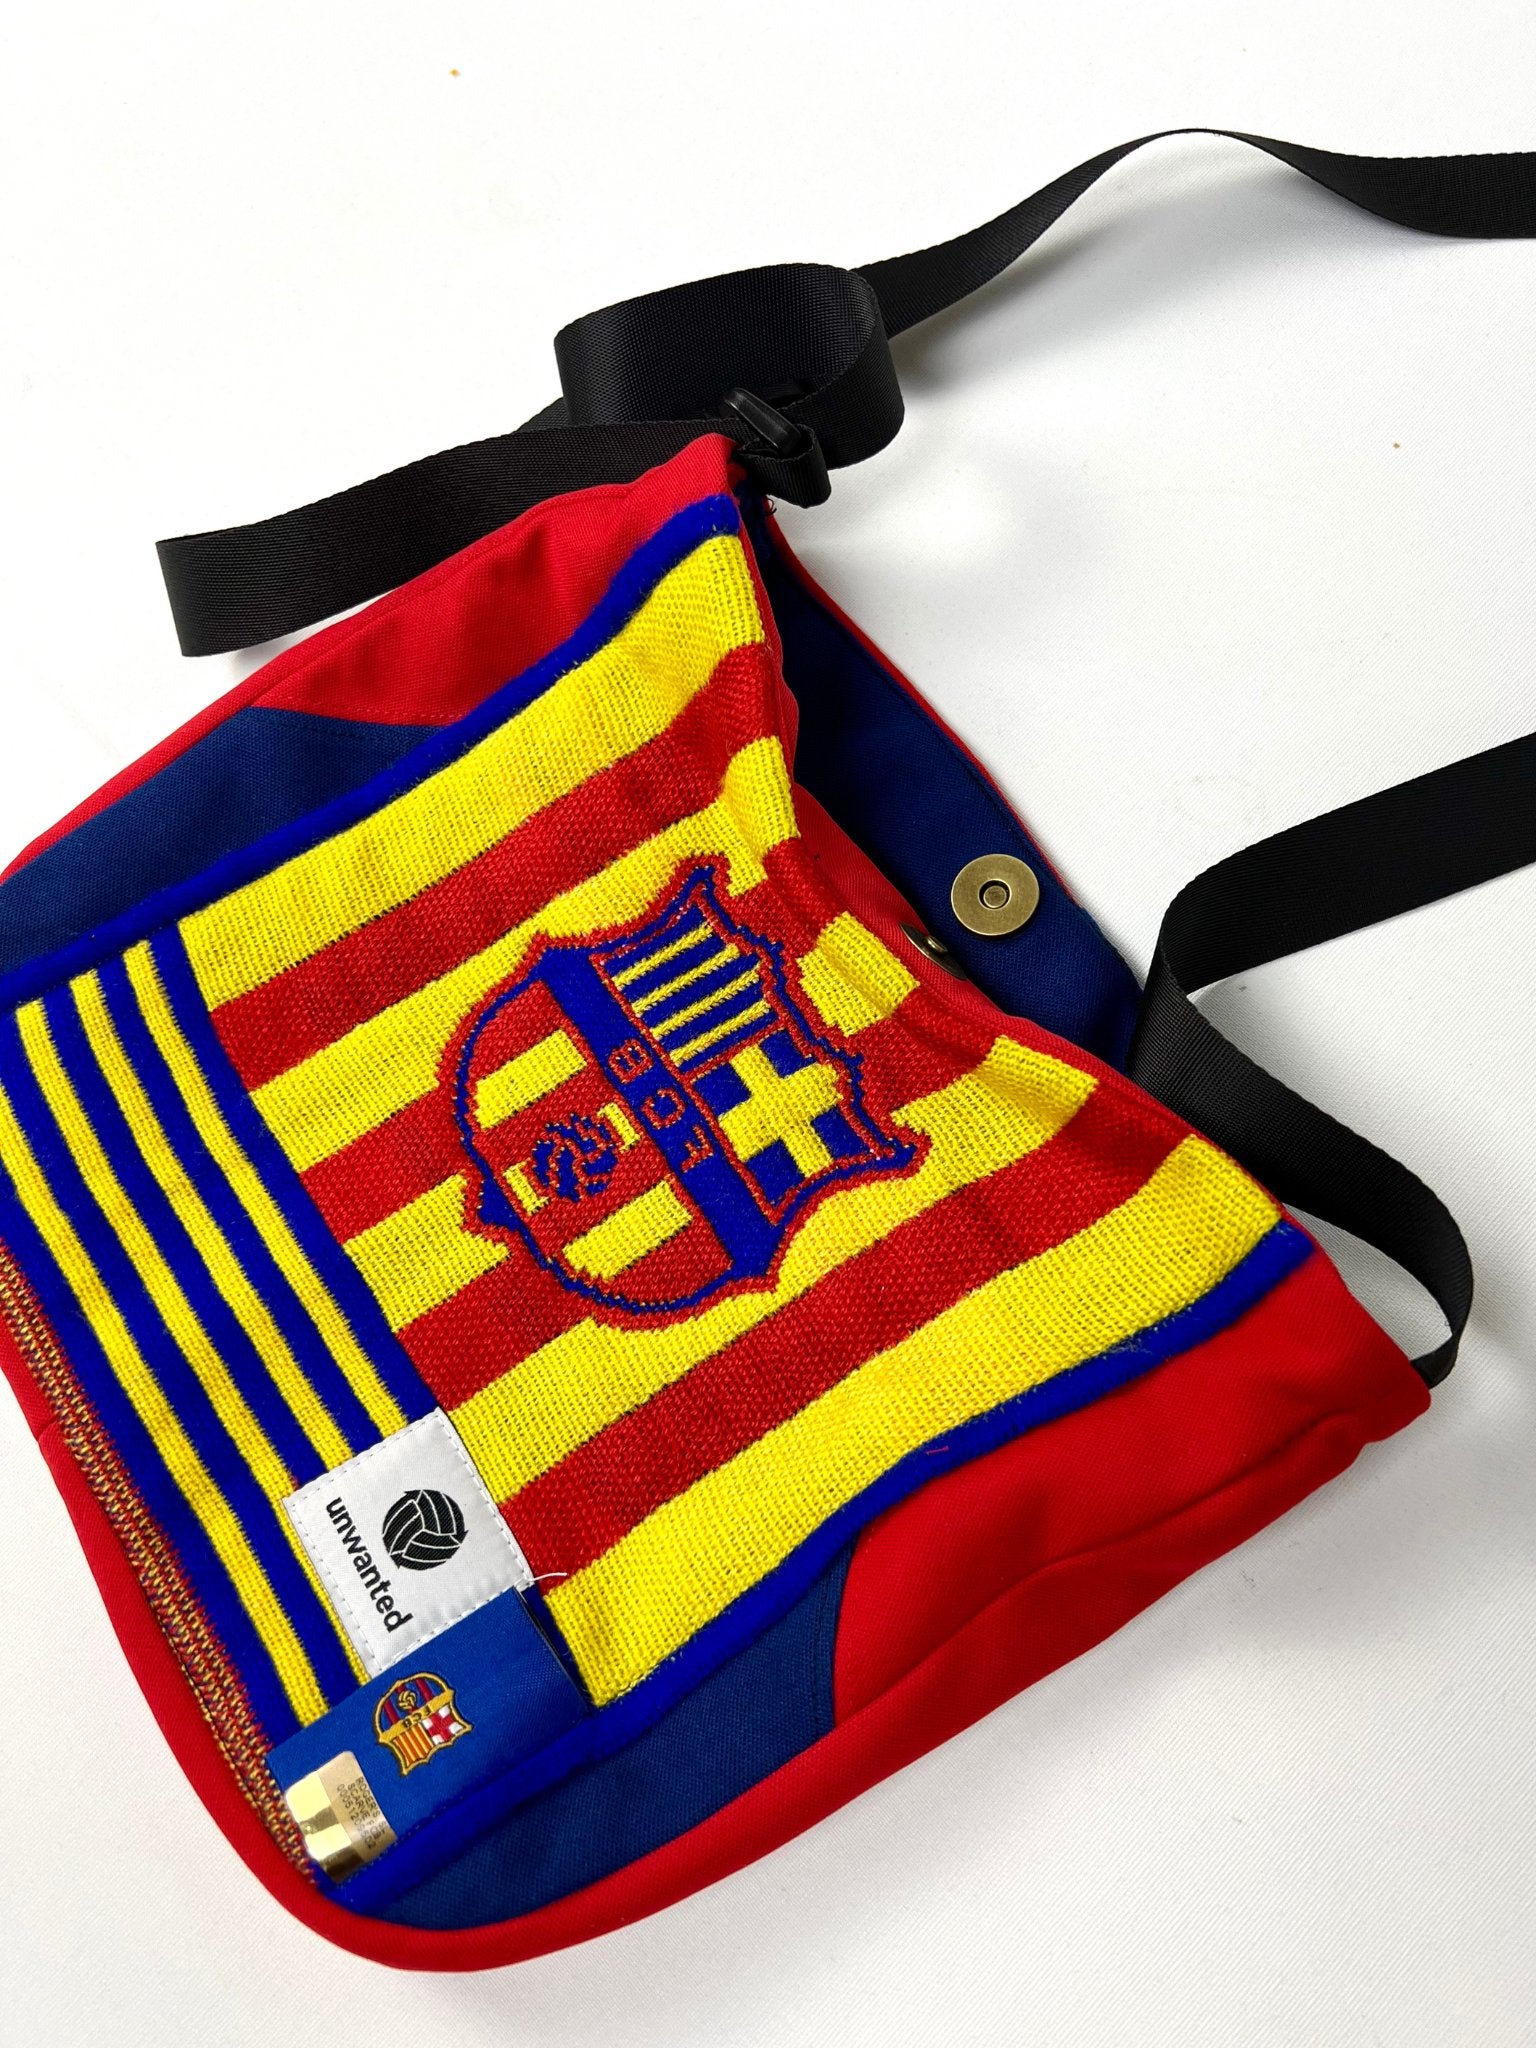 Barcelona Side Bag (Lite)-Unwanted FC-stride